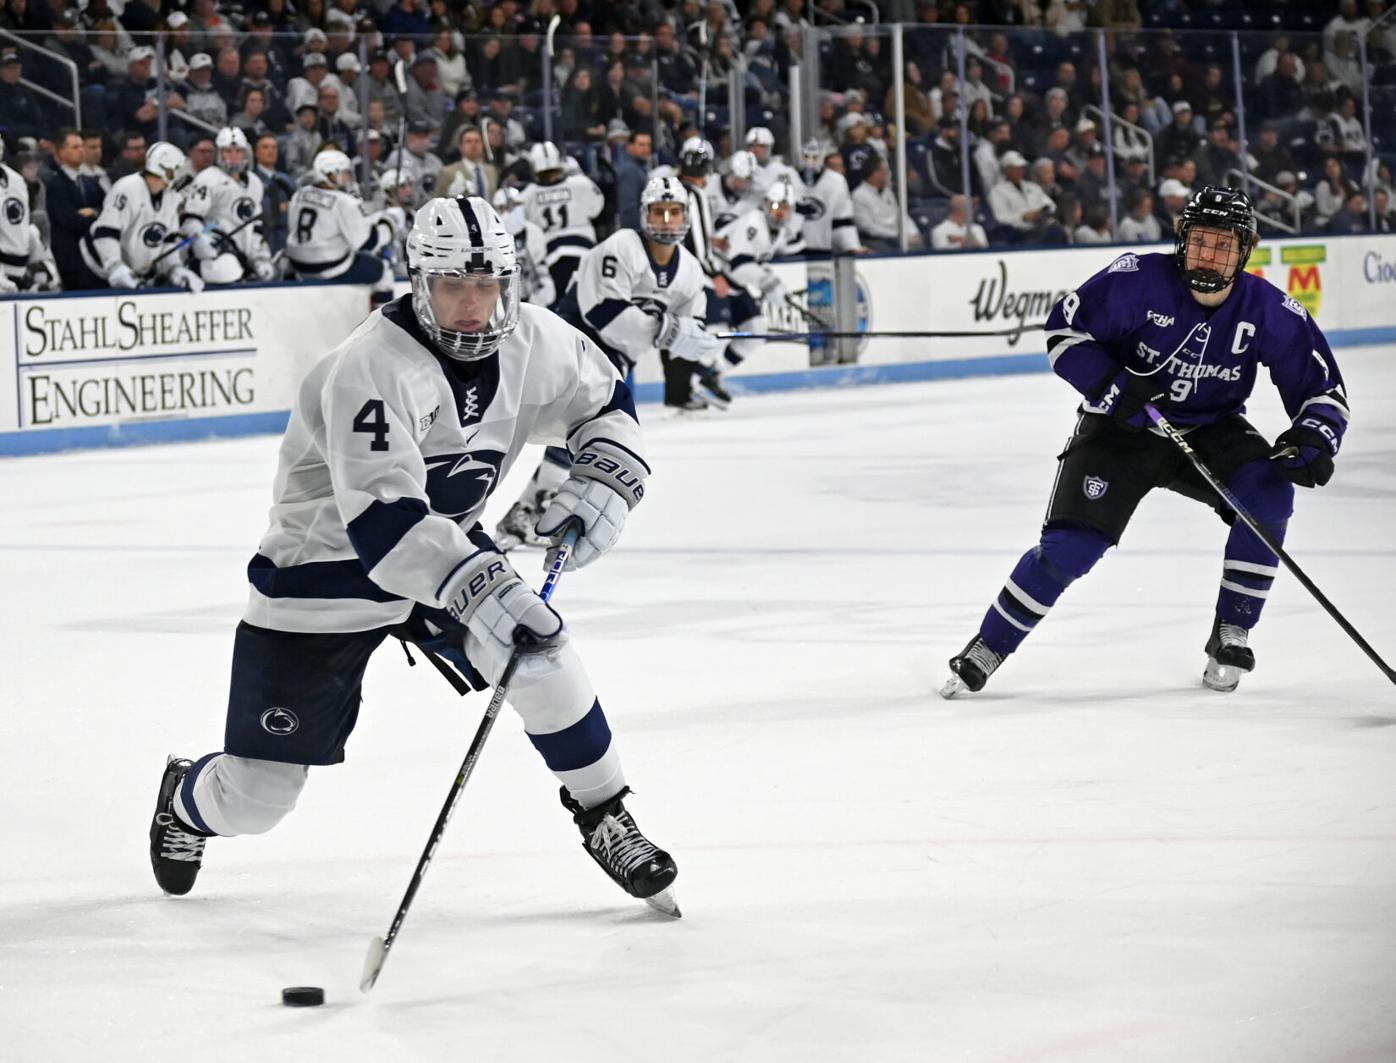 Penn State hockey falls to Michigan hockey, ending season